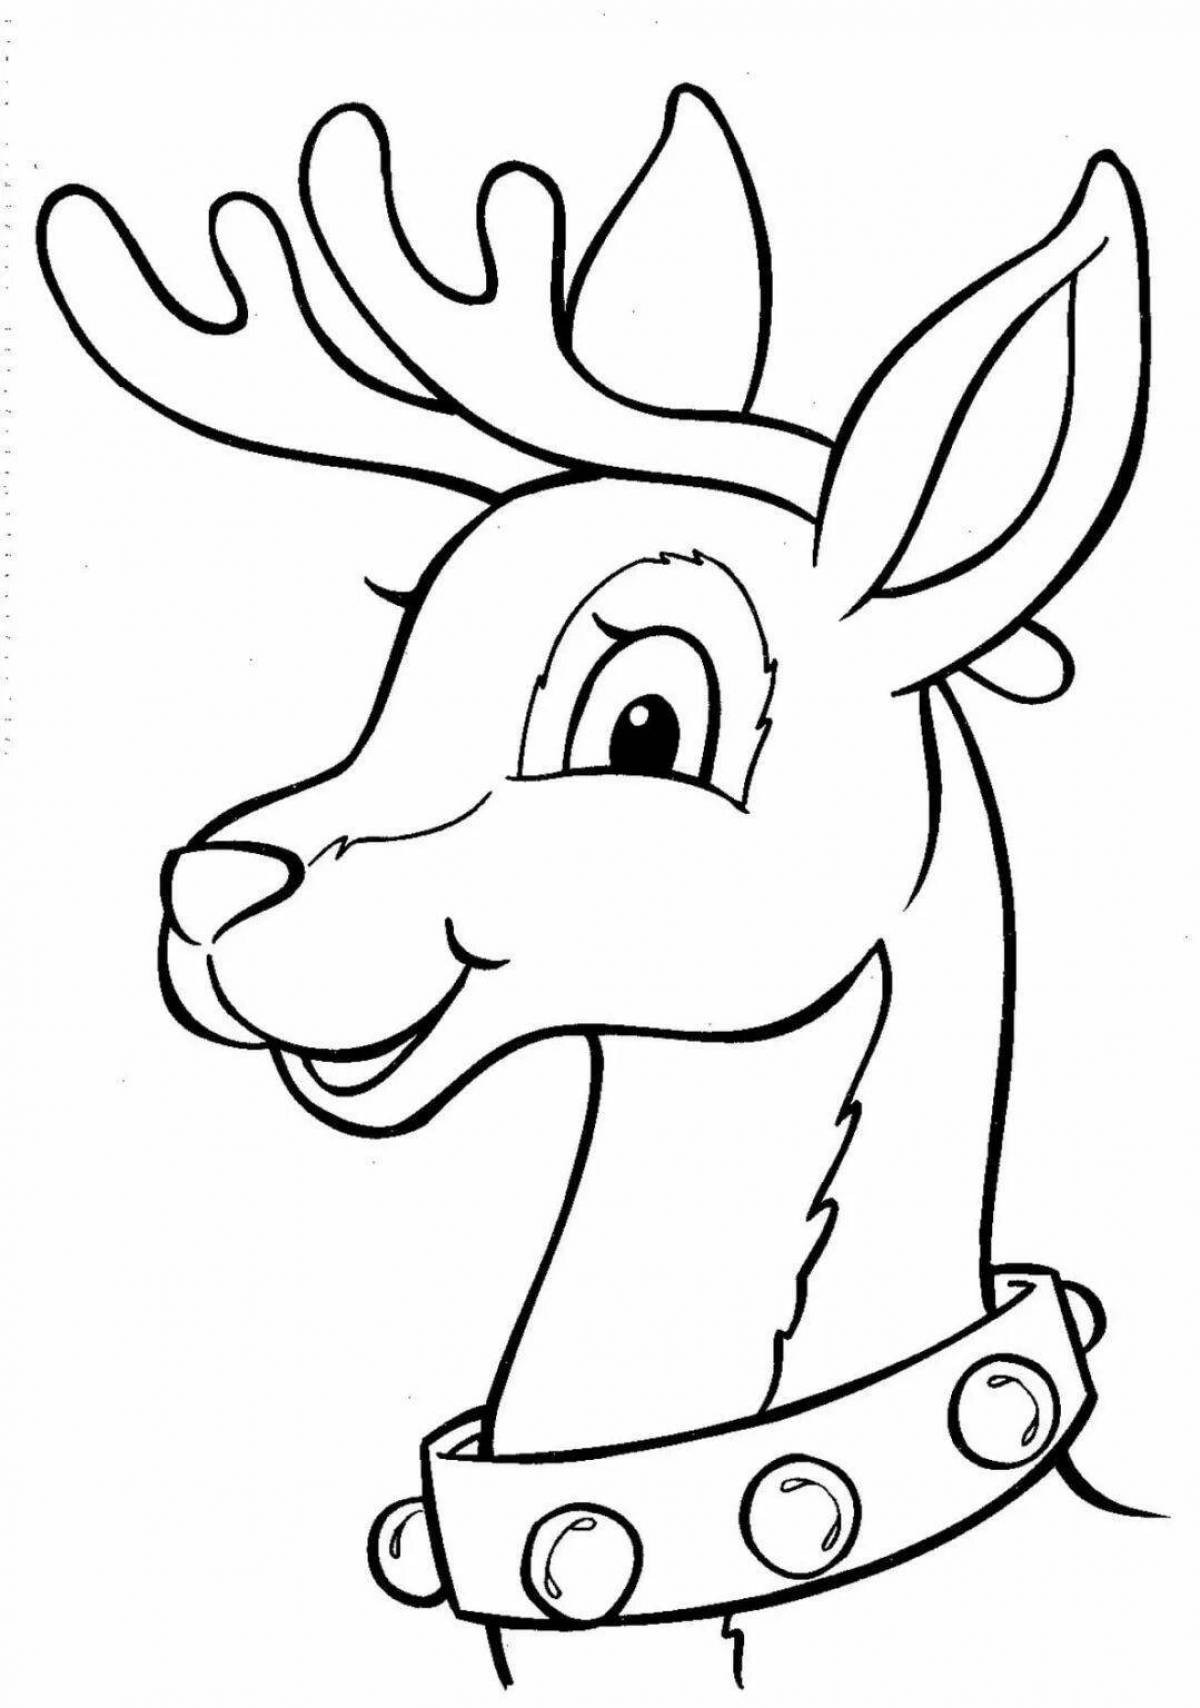 Energetic Christmas reindeer coloring book for kids